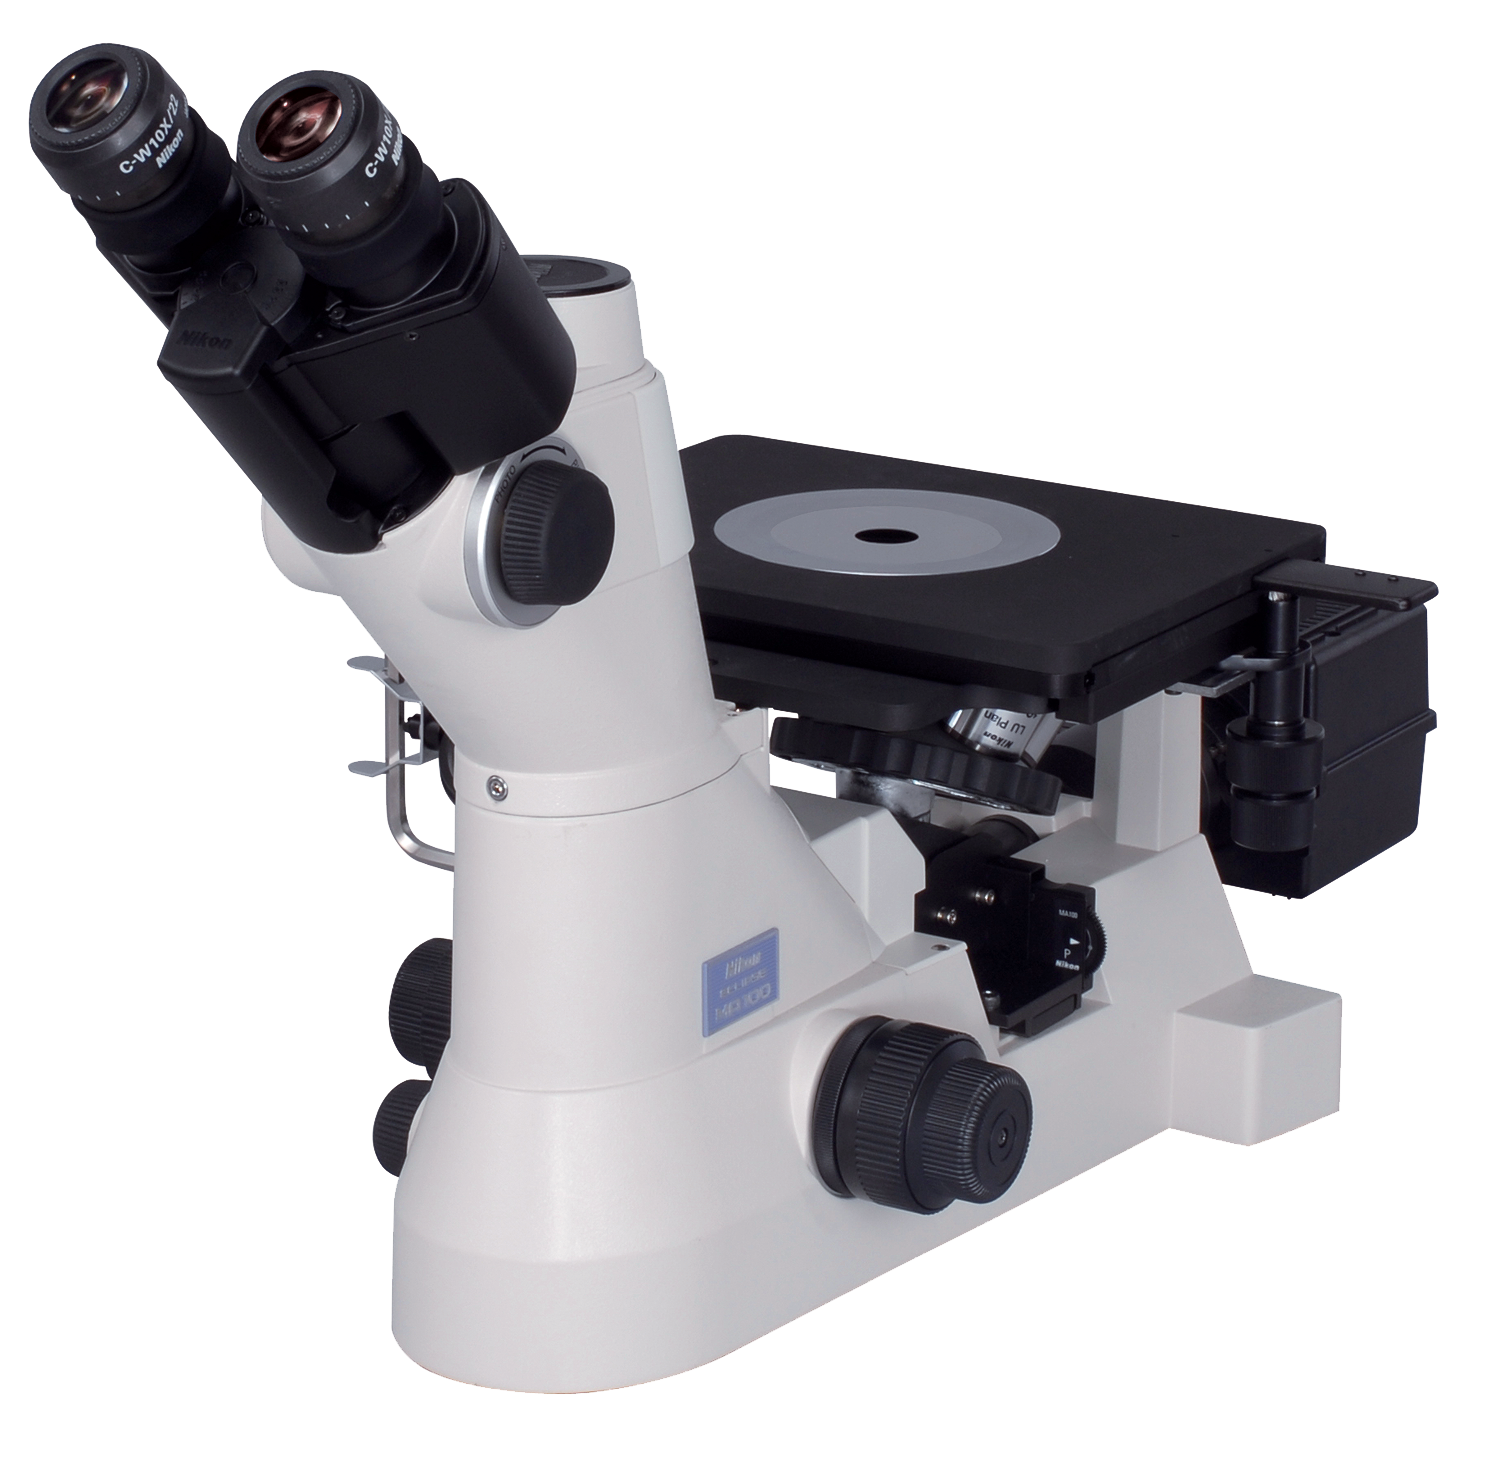 Nikon Eclipse MA100 / MA100L Inverted Metallographic Microscopes